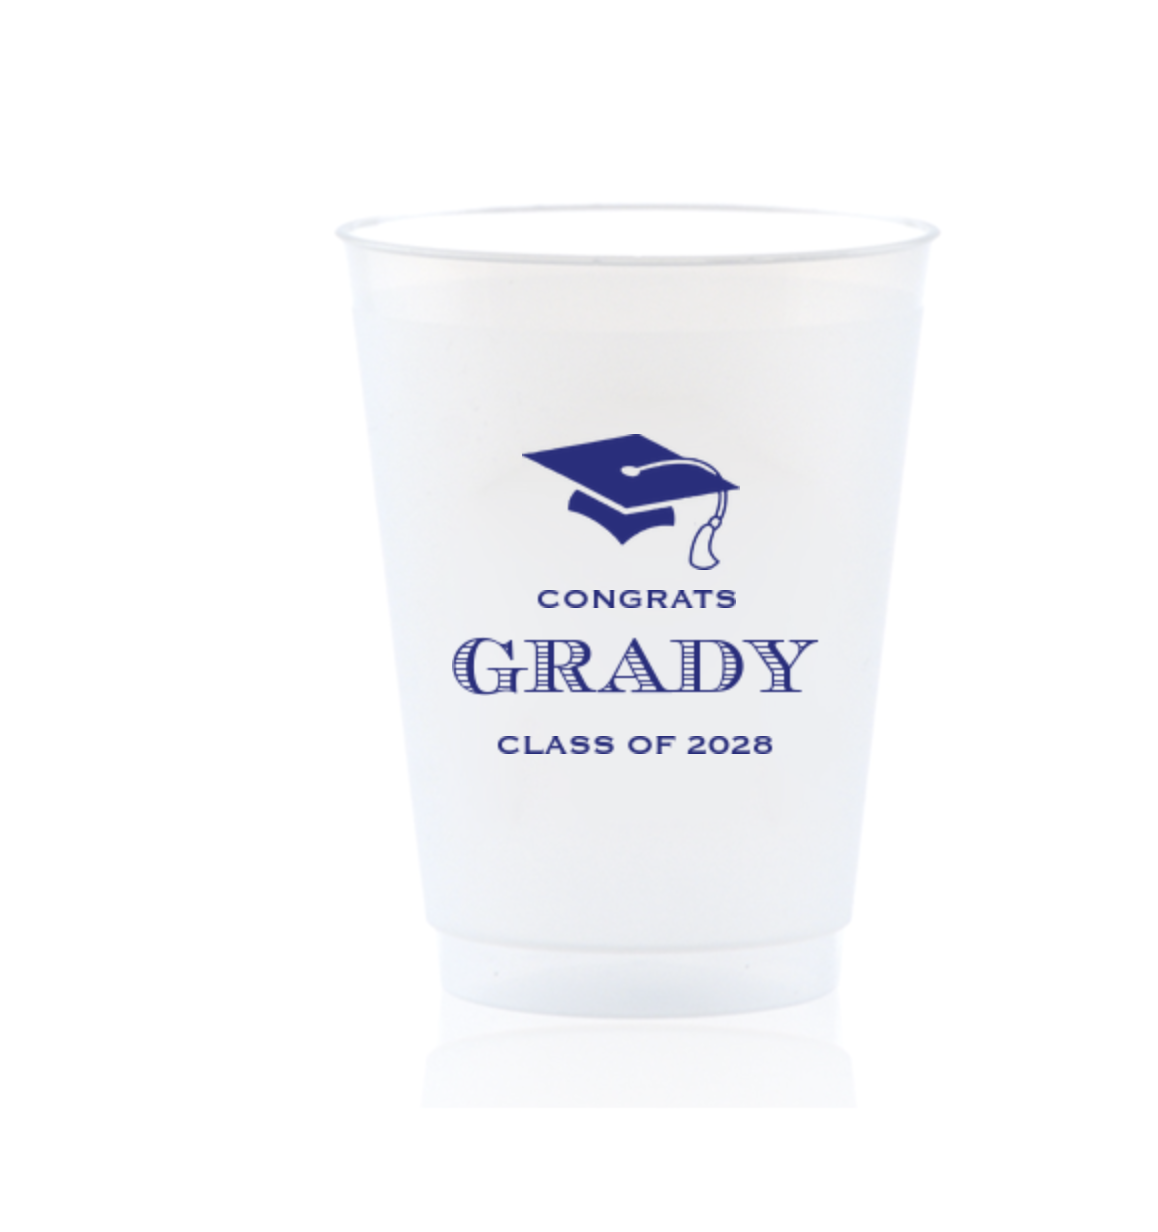 Custom Shatterproof Cups - Grady